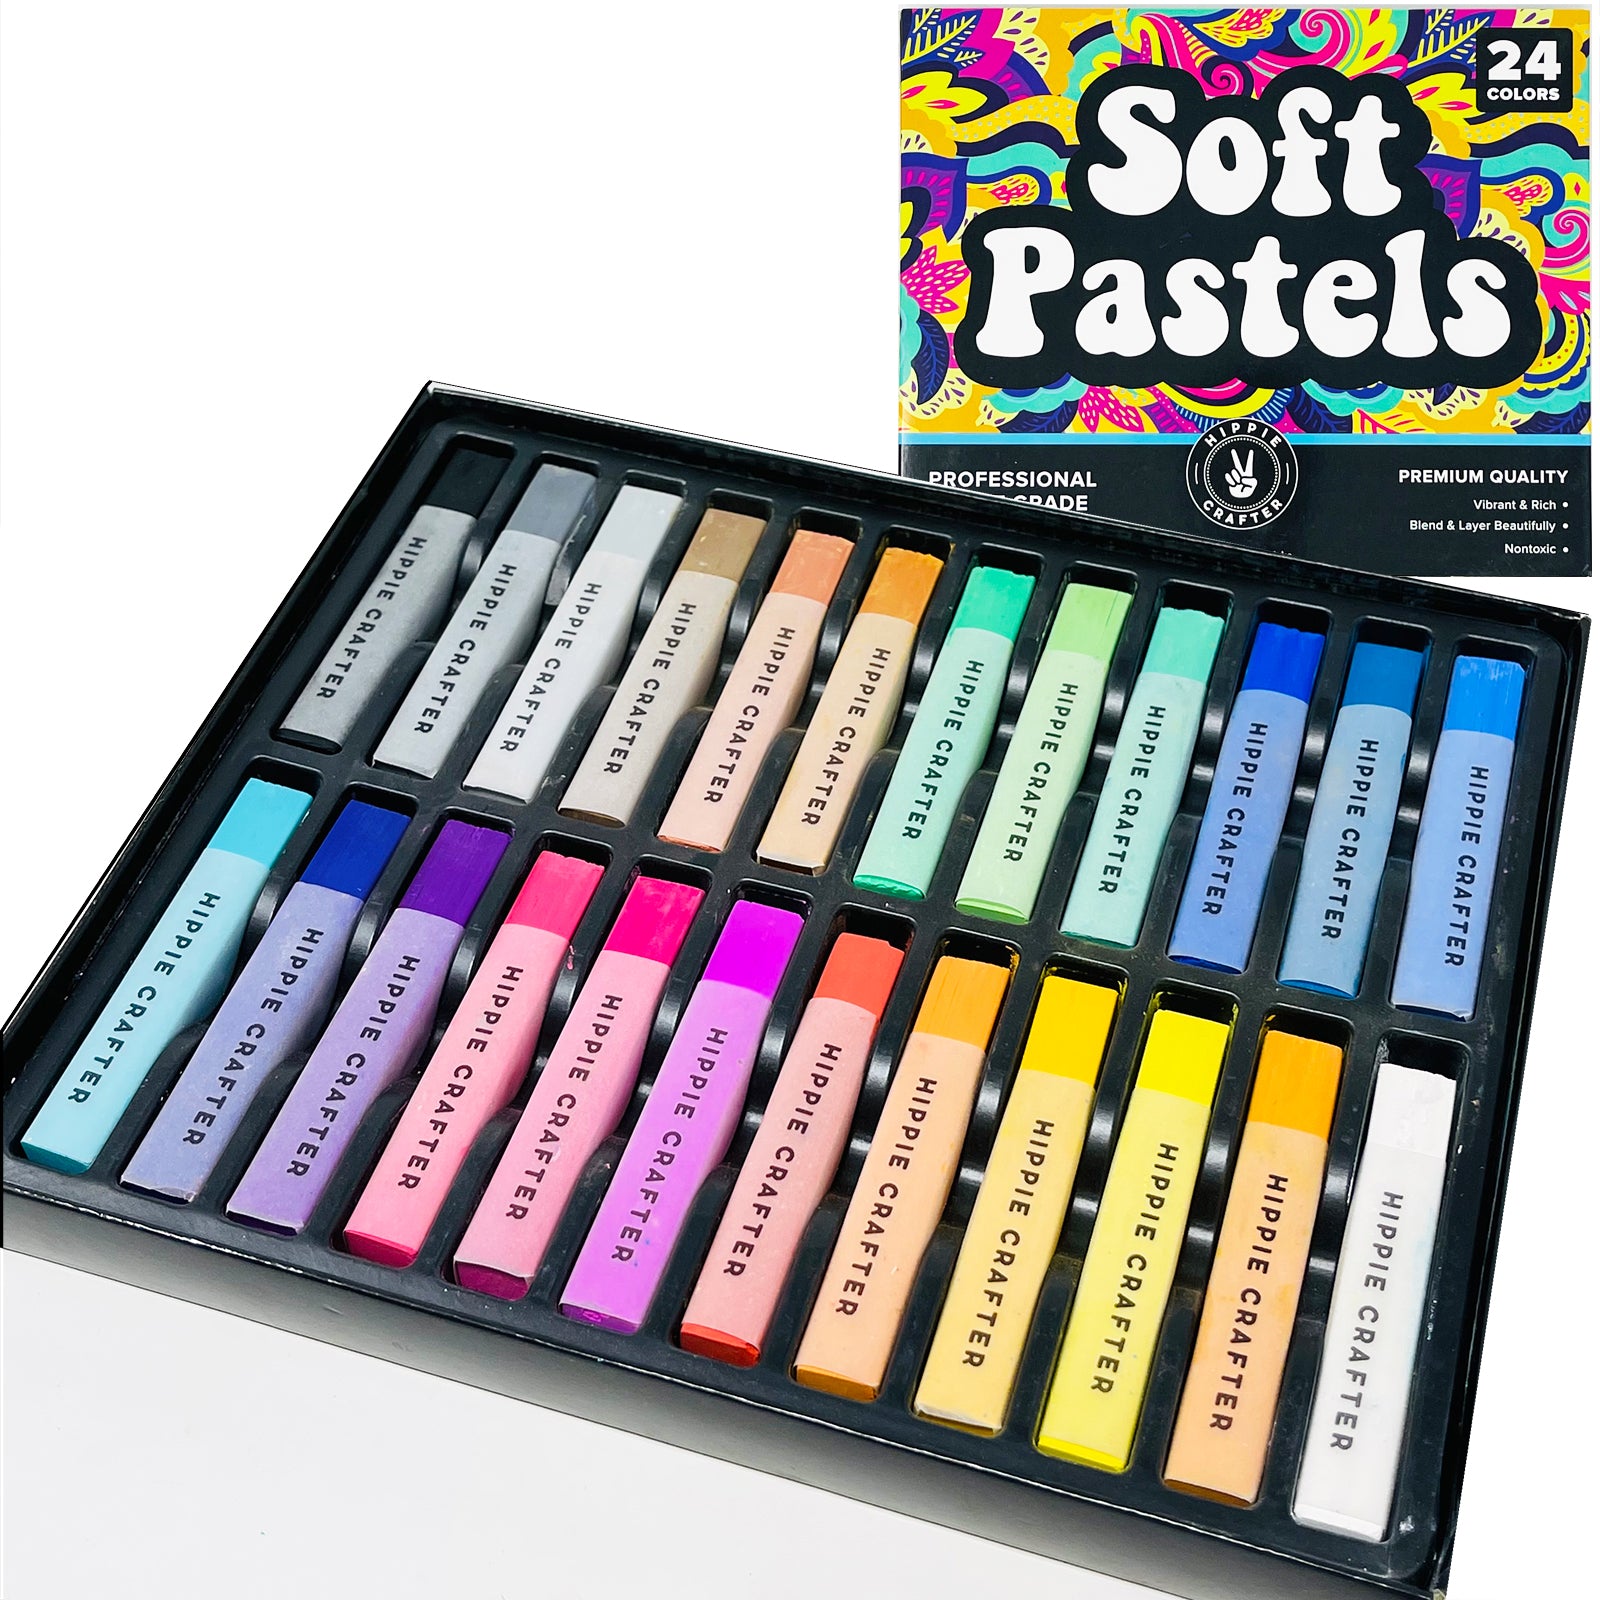 Pro Art Chalk Pastel Set 24 Color